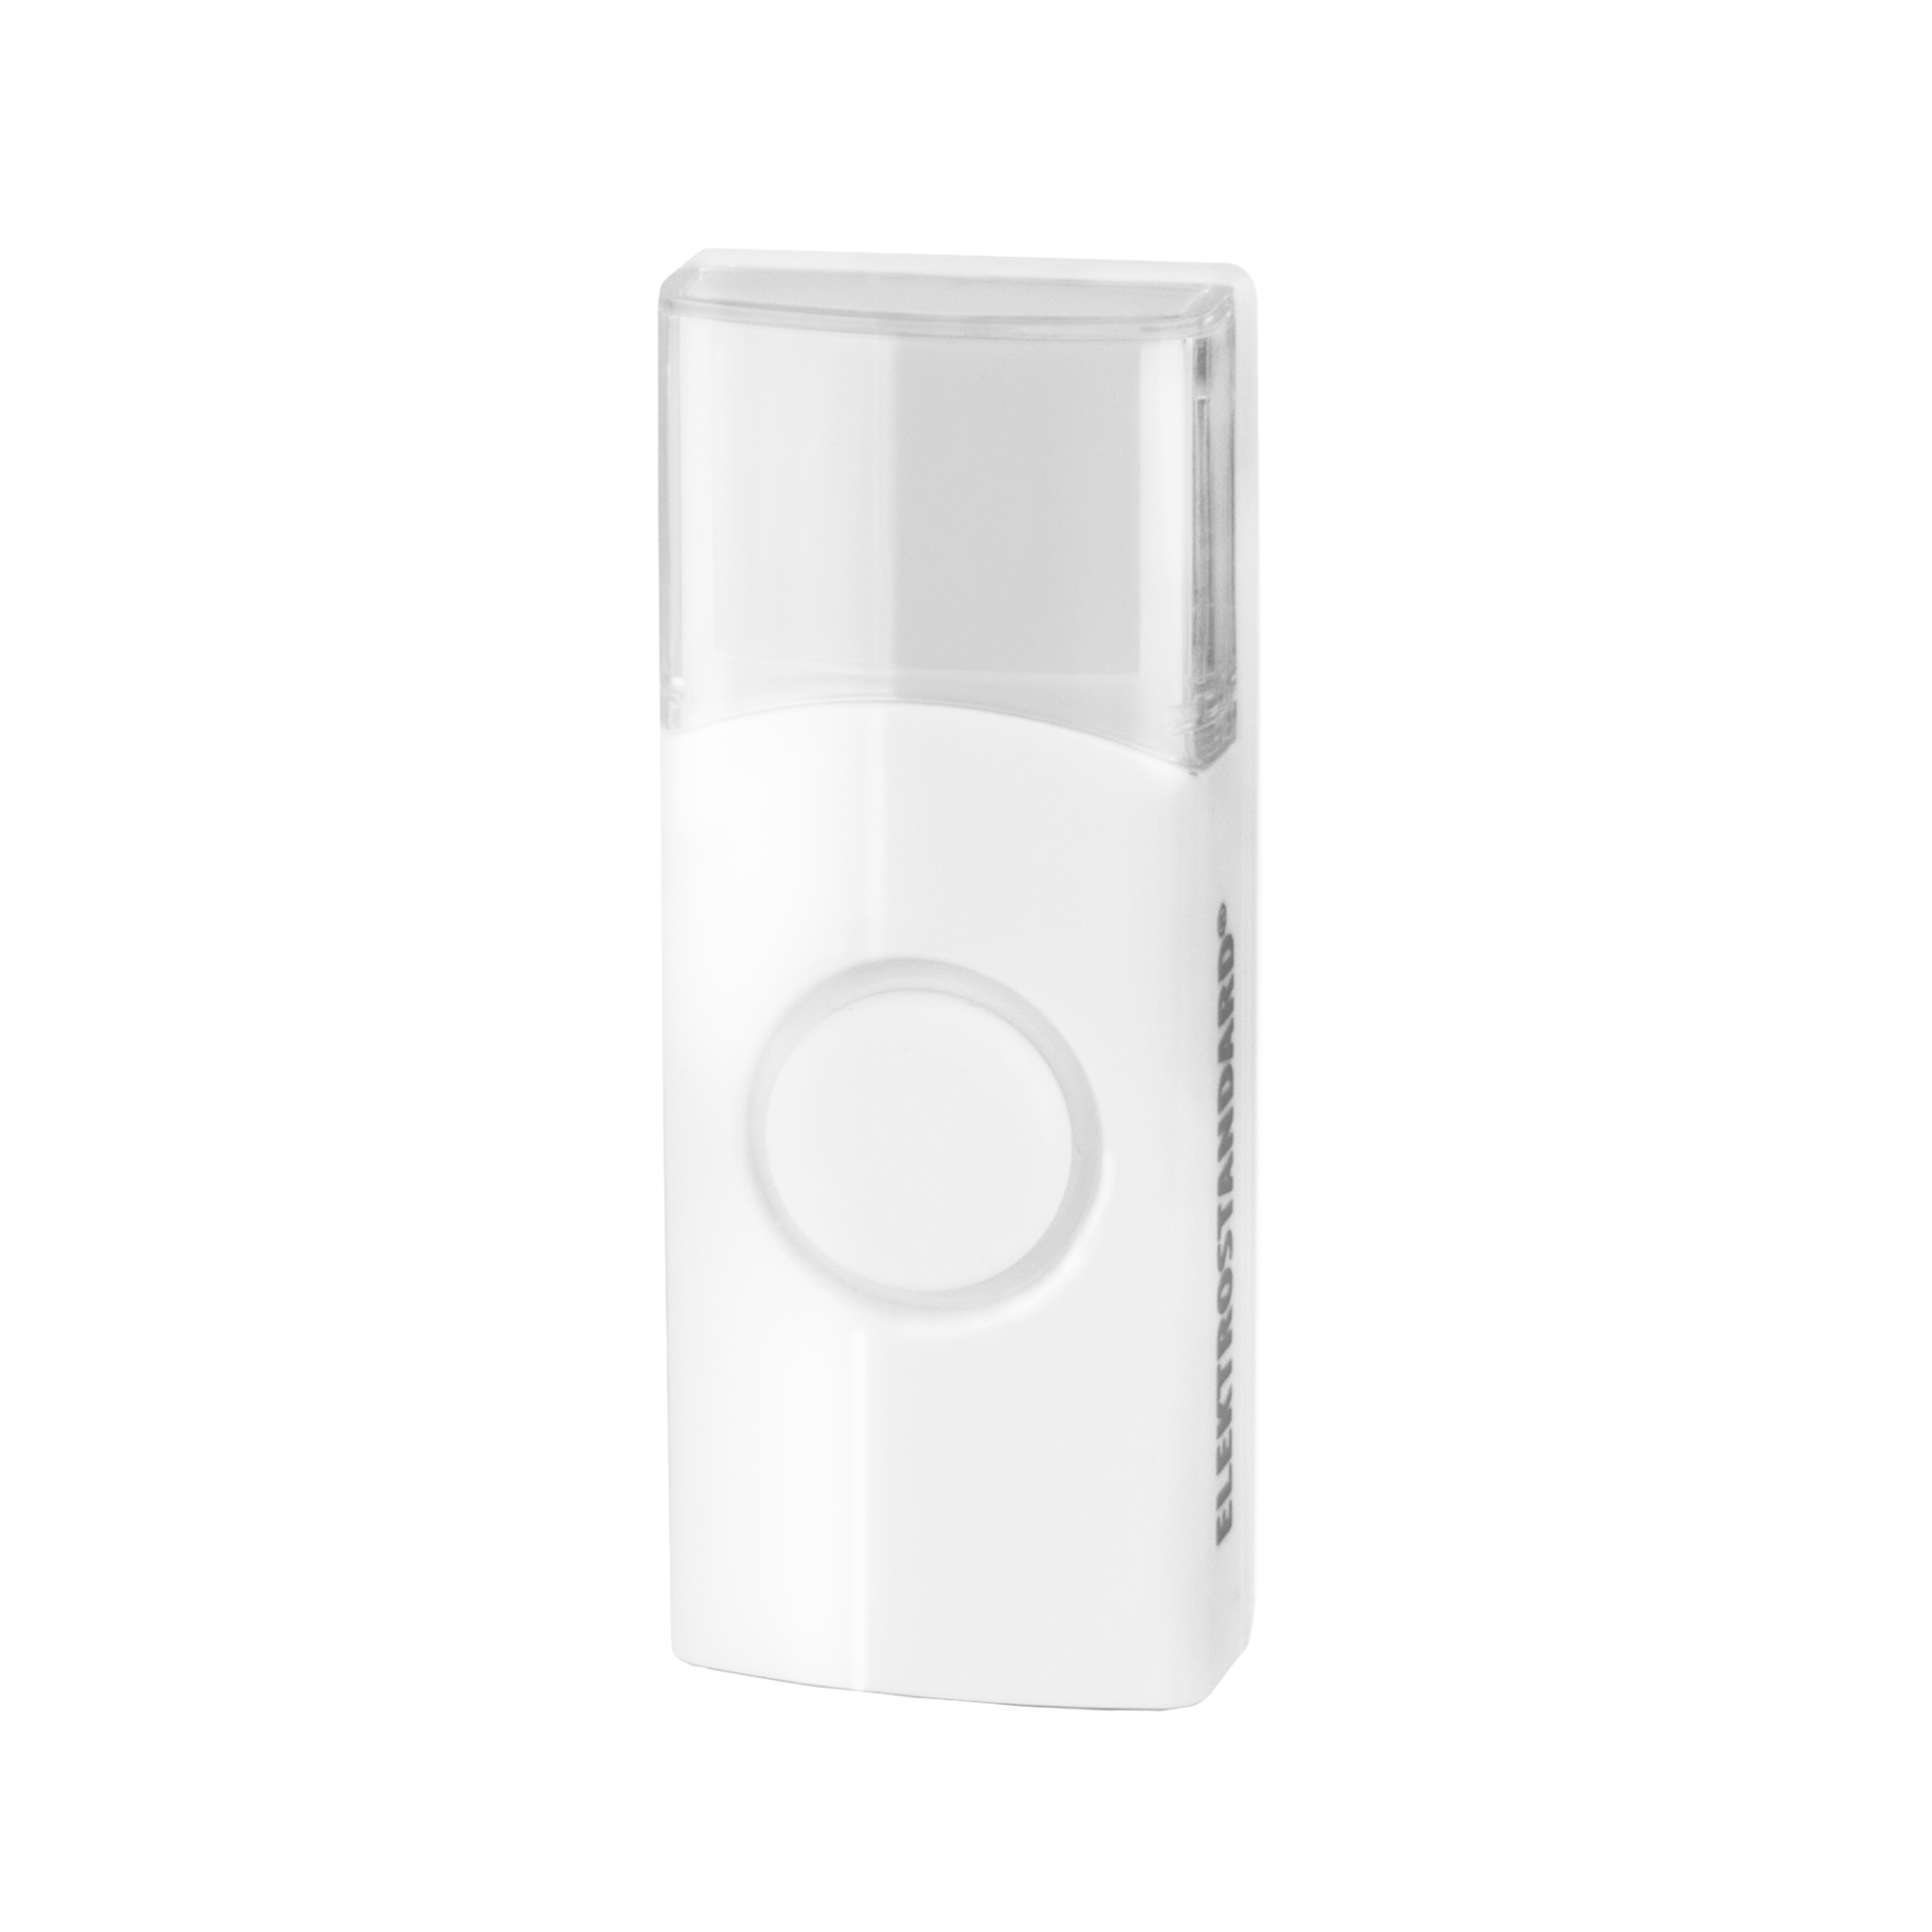 92725208 Кнопка для дверного звонка беспроводная Wireless цвет белый STLM-0542861 ELEKTROSTANDARD